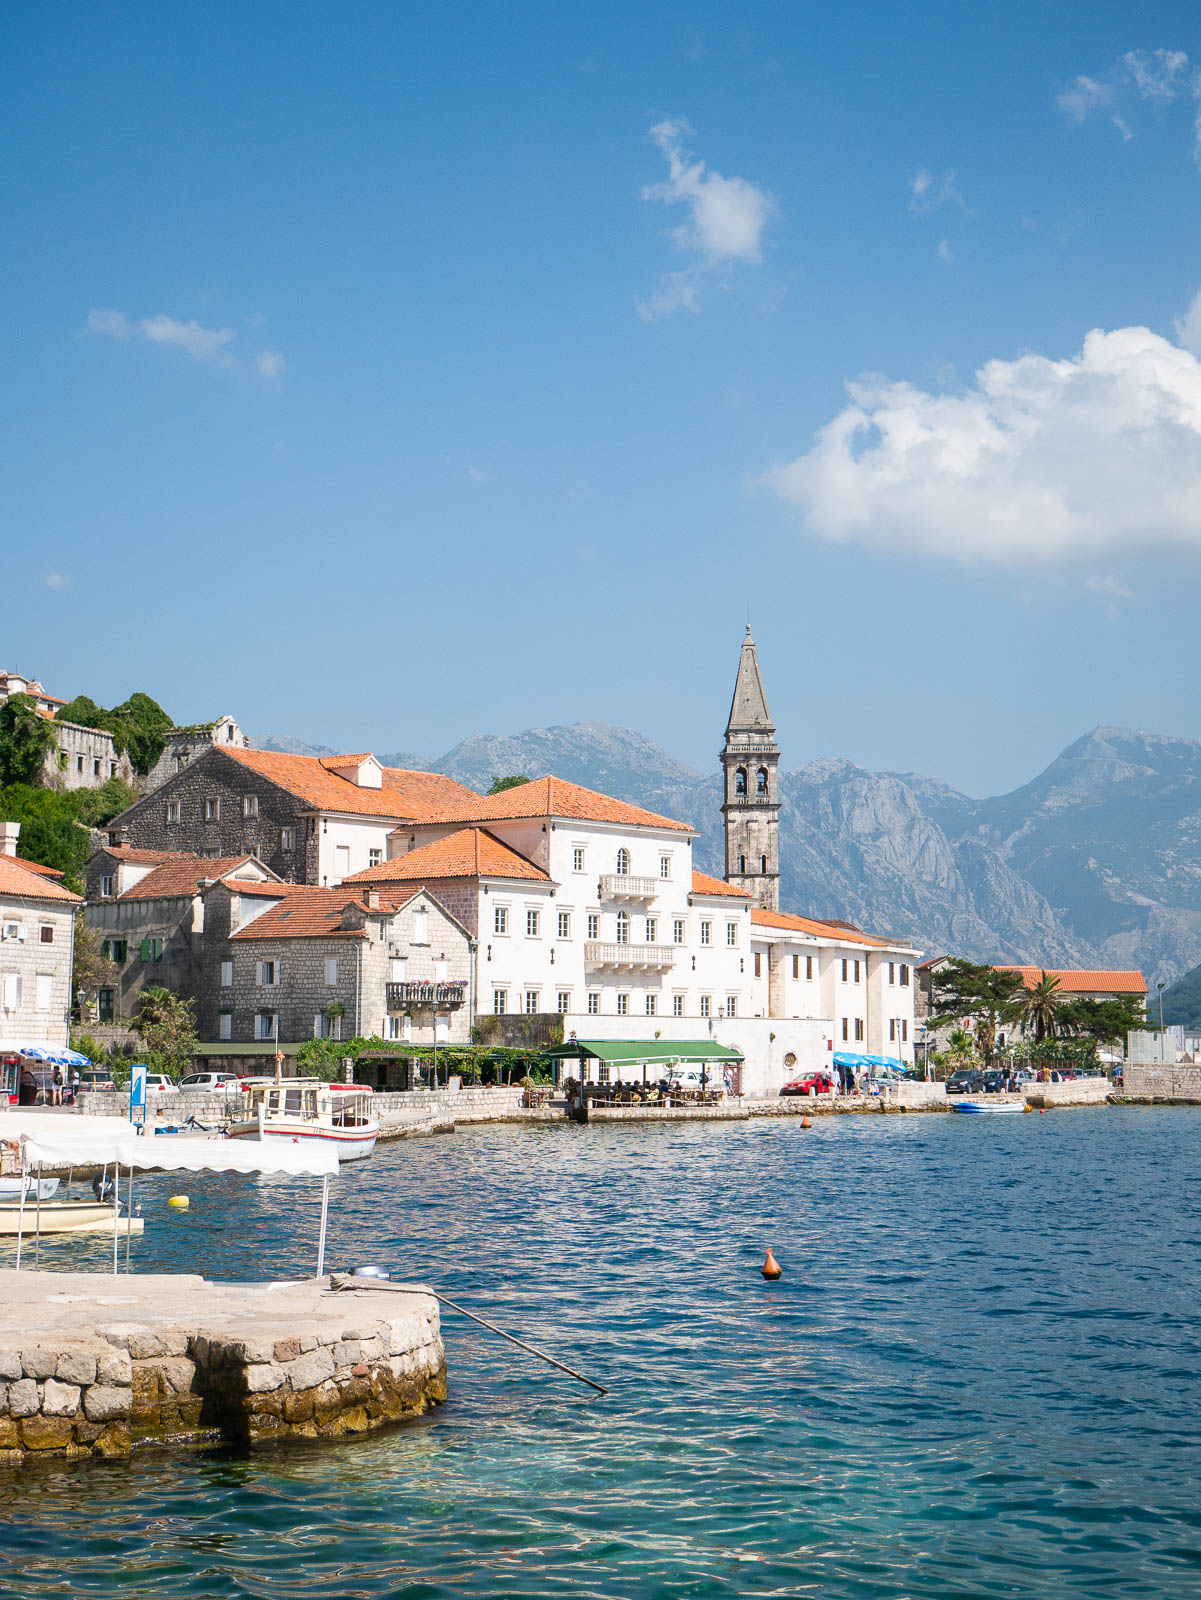 Town of Perast, Montenegro